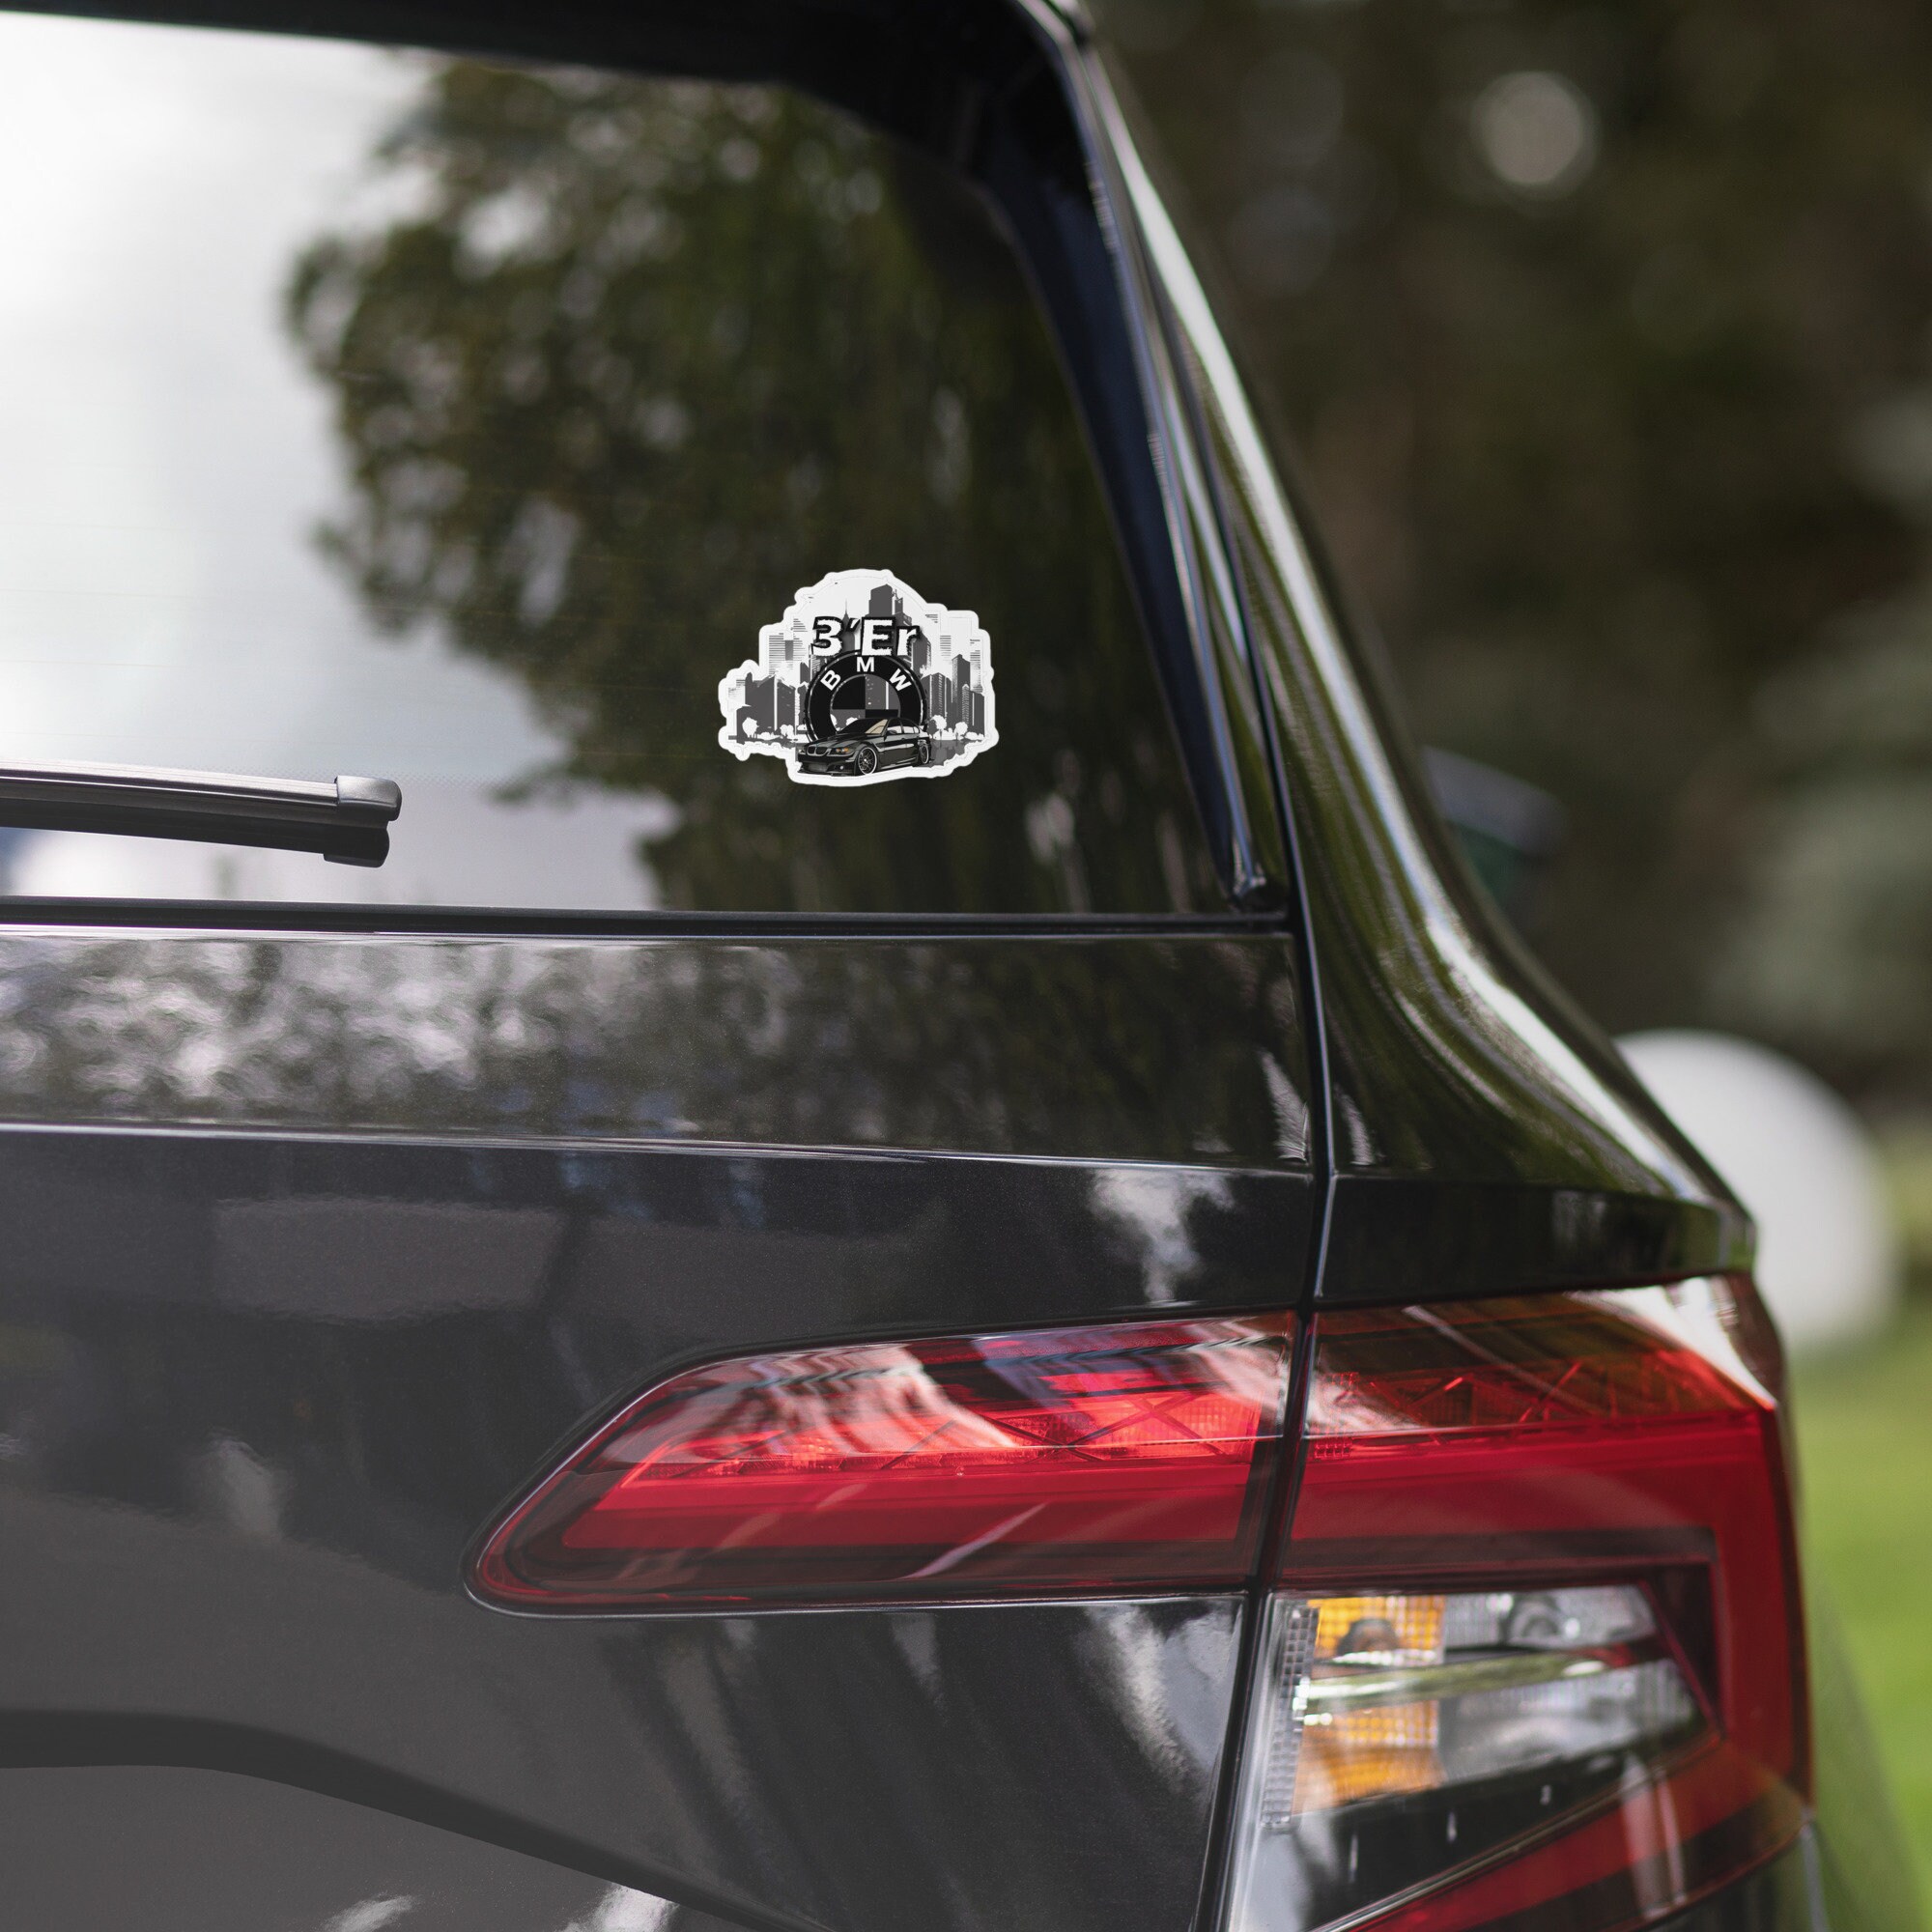 3d Abs Chrome Noir Logo 320i 320d Emblème Lettres Voiture Badge Autocollant  De Coffre Autocollant Pour Bmw E46 E90 E91 E92 E30 E36 F30 Accessoires